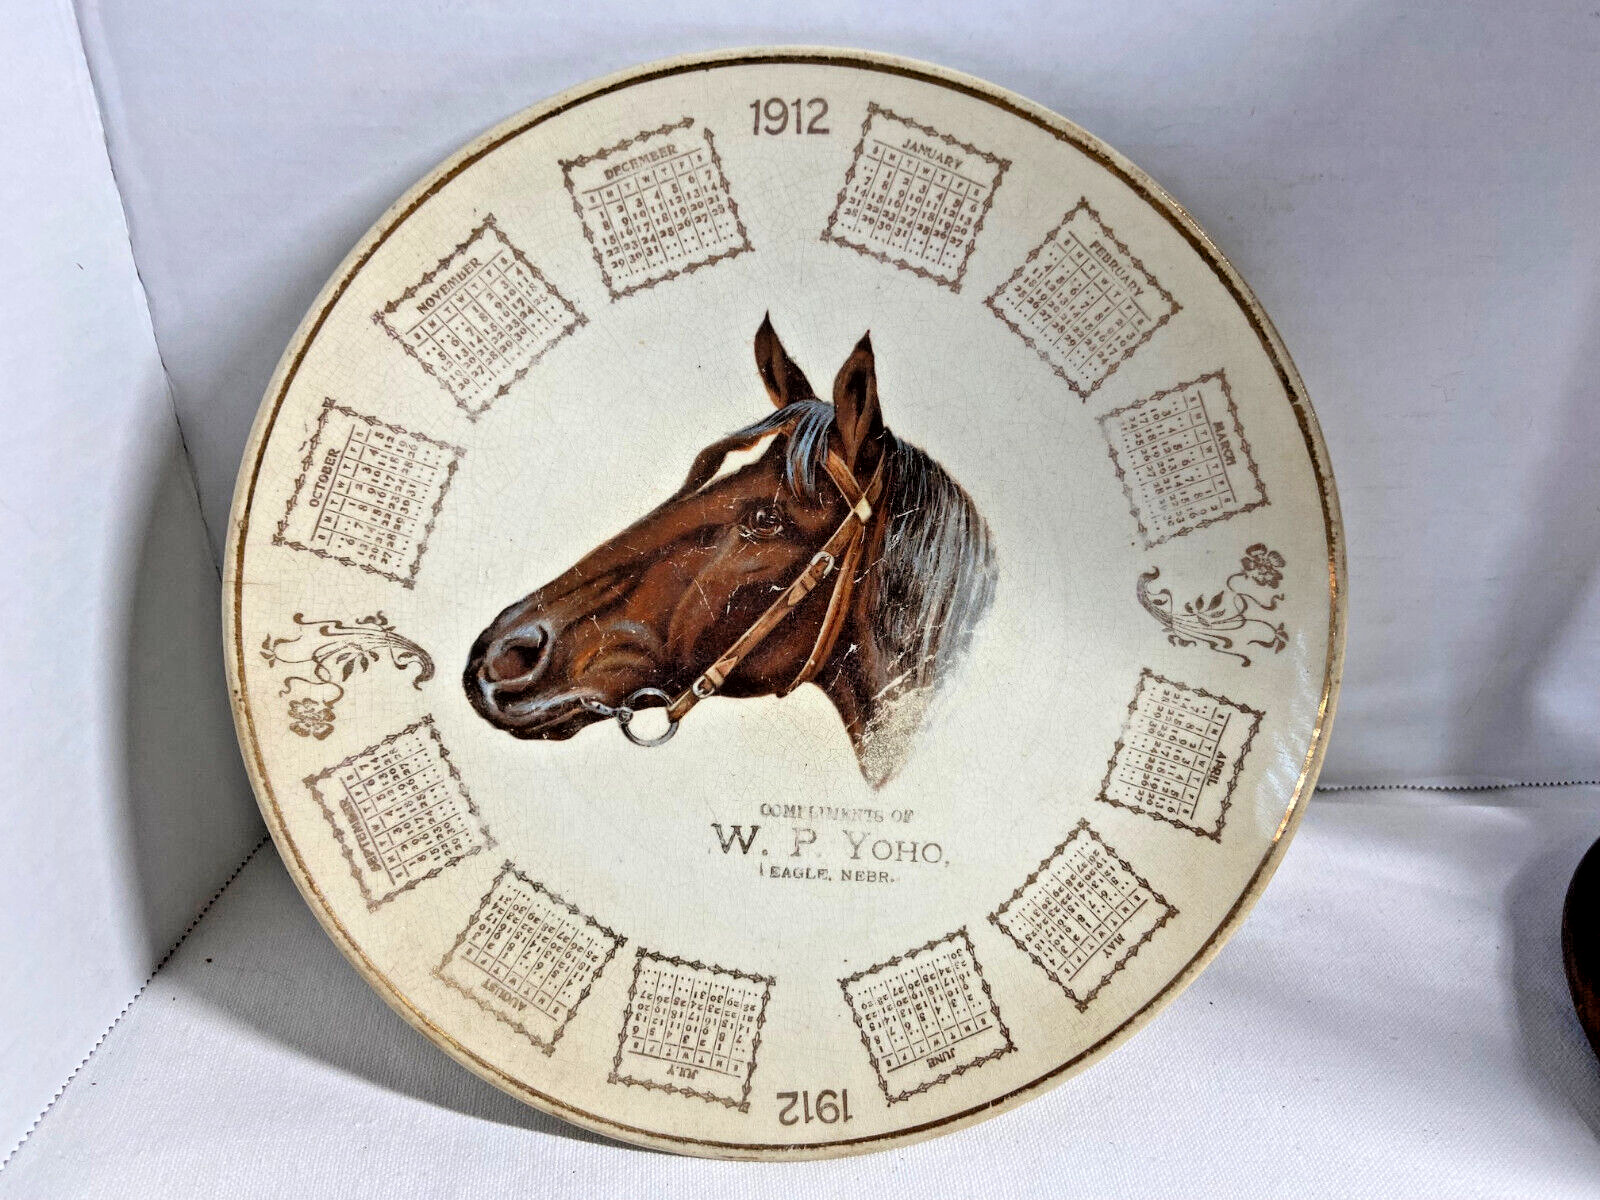 1912 W. P. Yoho Thoroughbred Horse/Floral Designed Calendar Plate W/Gold Trim